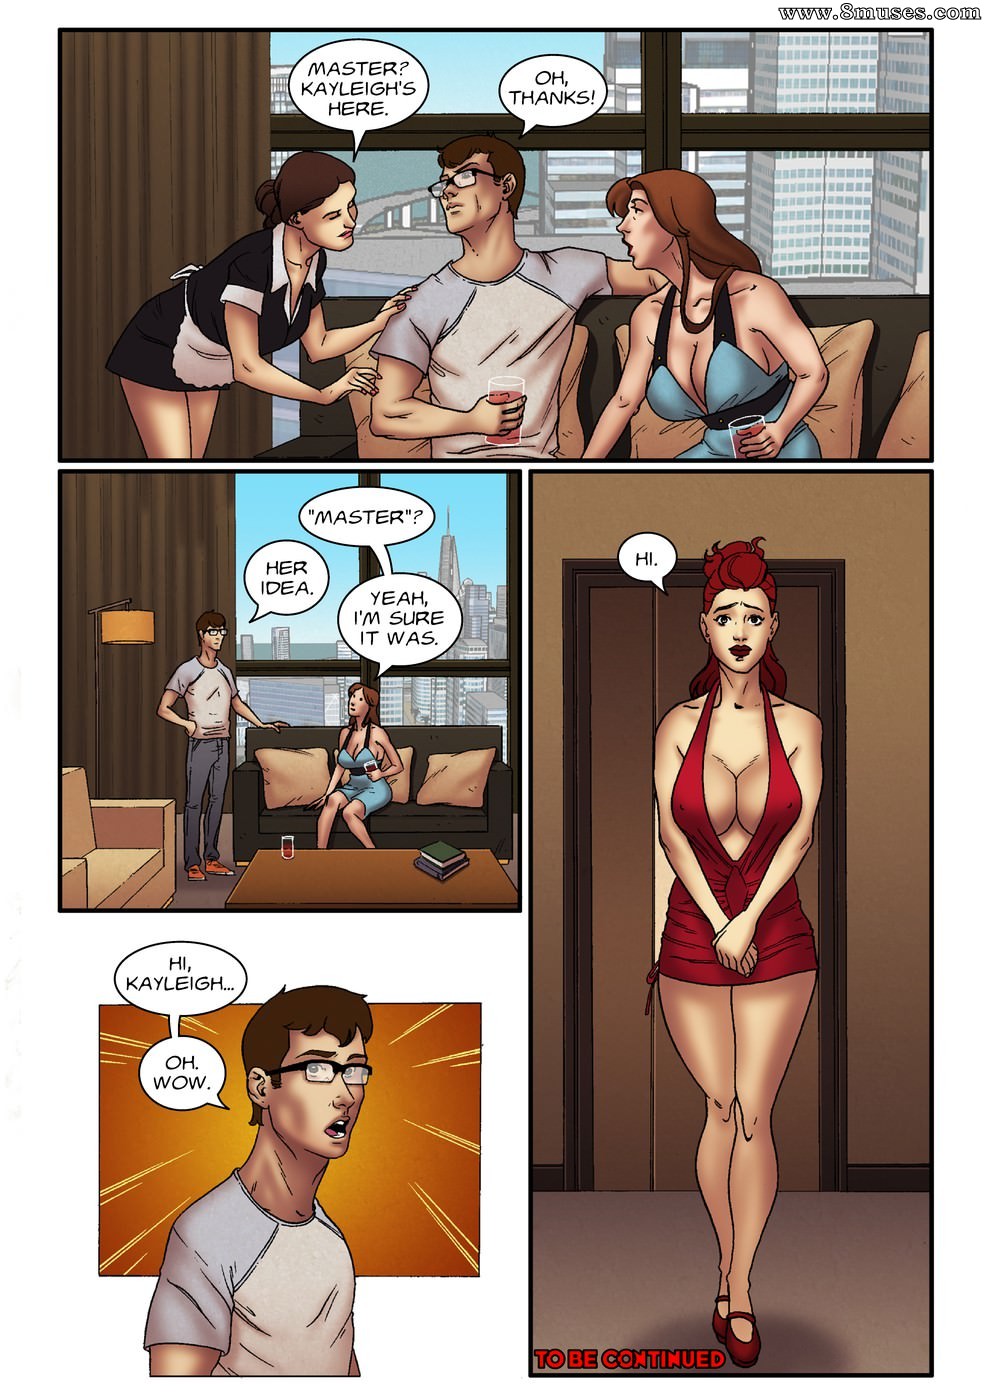 Hidden Sex Toons - Hidden Knowledge Issue 17 - 8muses Comics - Sex Comics and Porn Cartoons